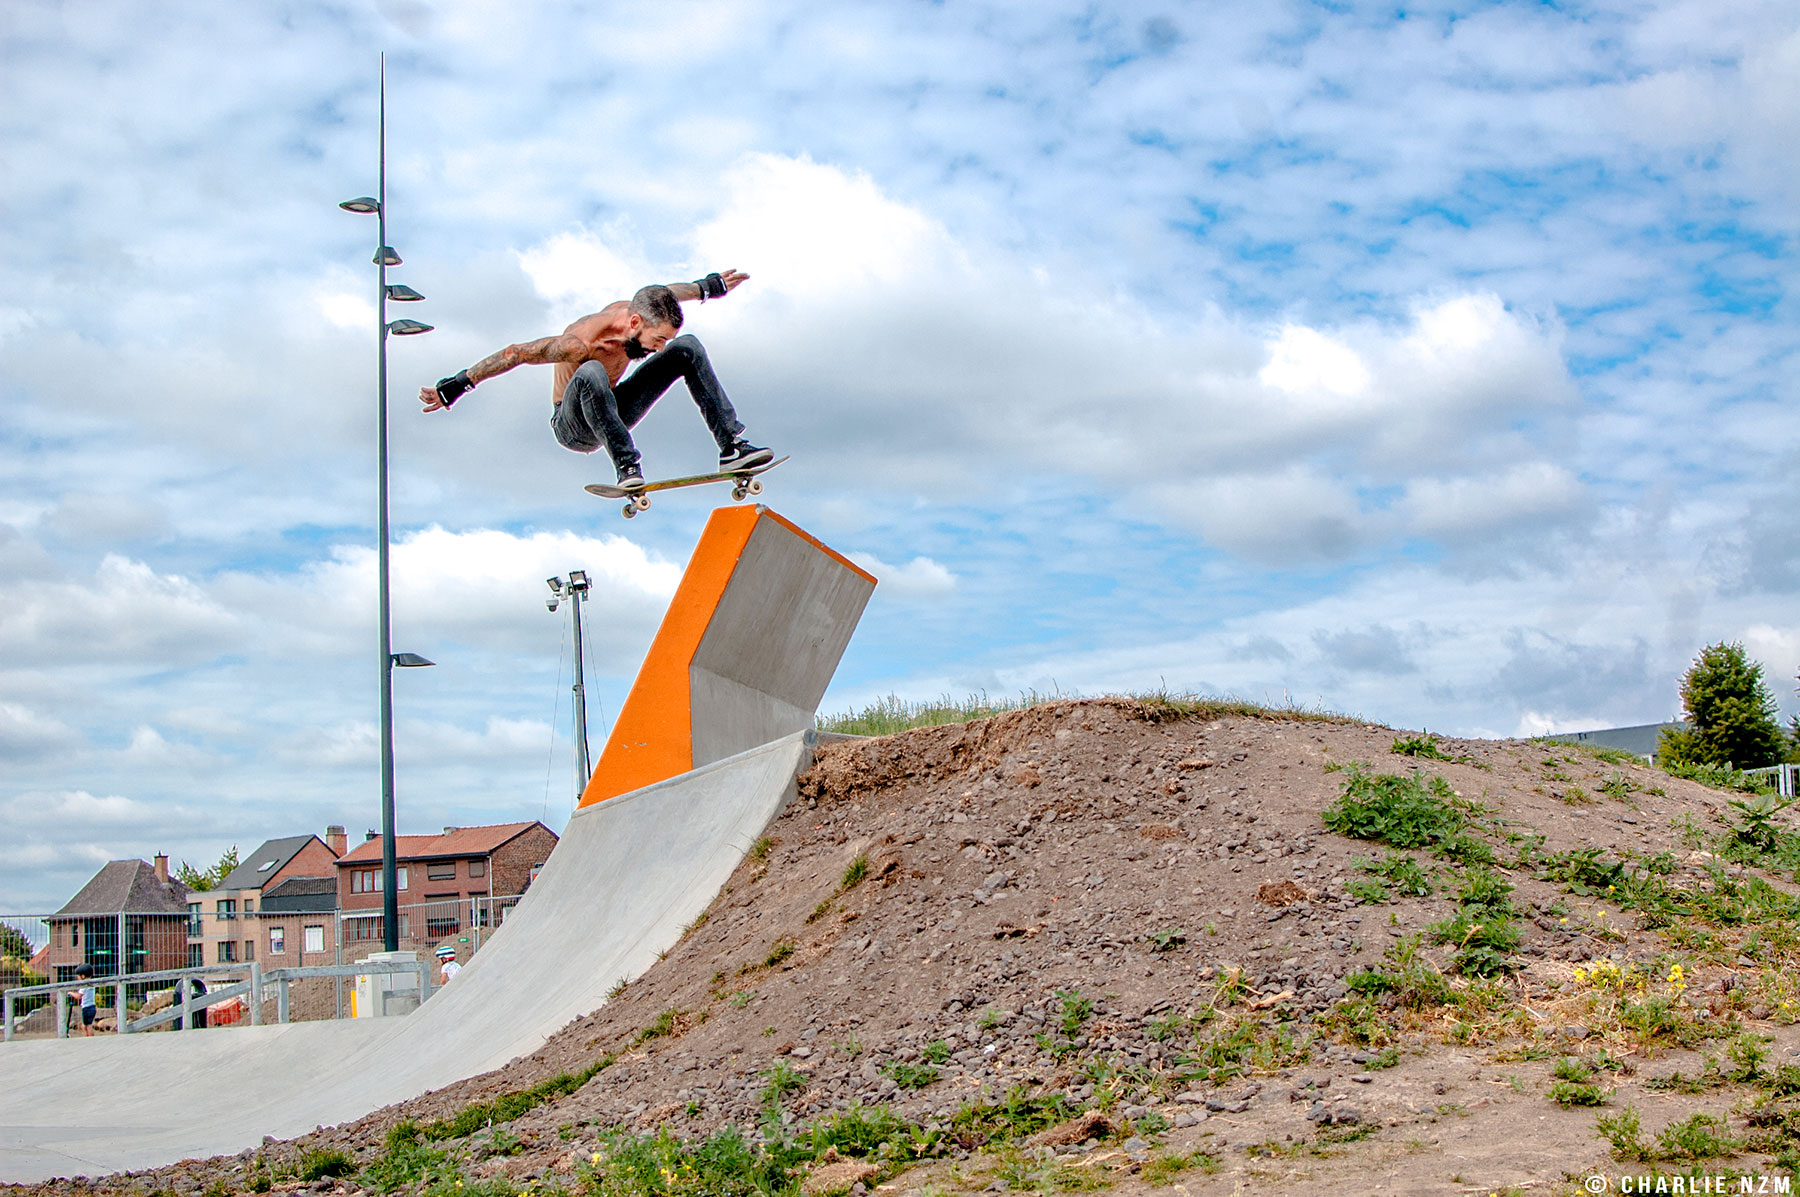 Air by Kenny Duquet at Skatepark Tongeren. Photo: Charlie Van Lierde